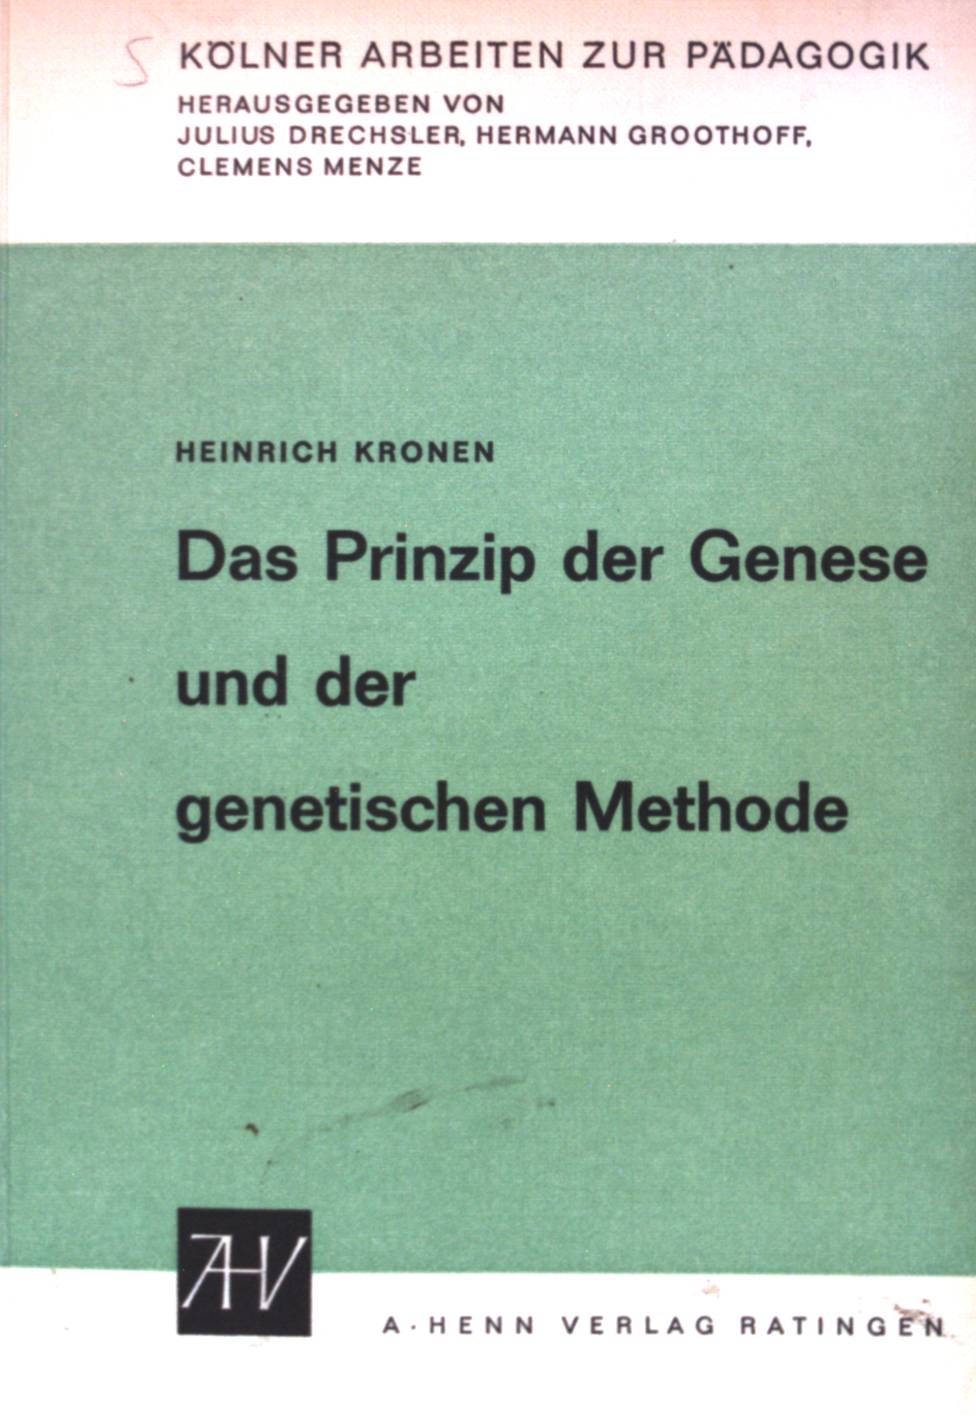 Das Prinzip der Genese und der genetischen Methode: in Pädagogik, Didaktik, Scholastik(Schultheorie) bei Karl Wilhelm Eduard Mager(1810-1858). - Kronen, Heinrich